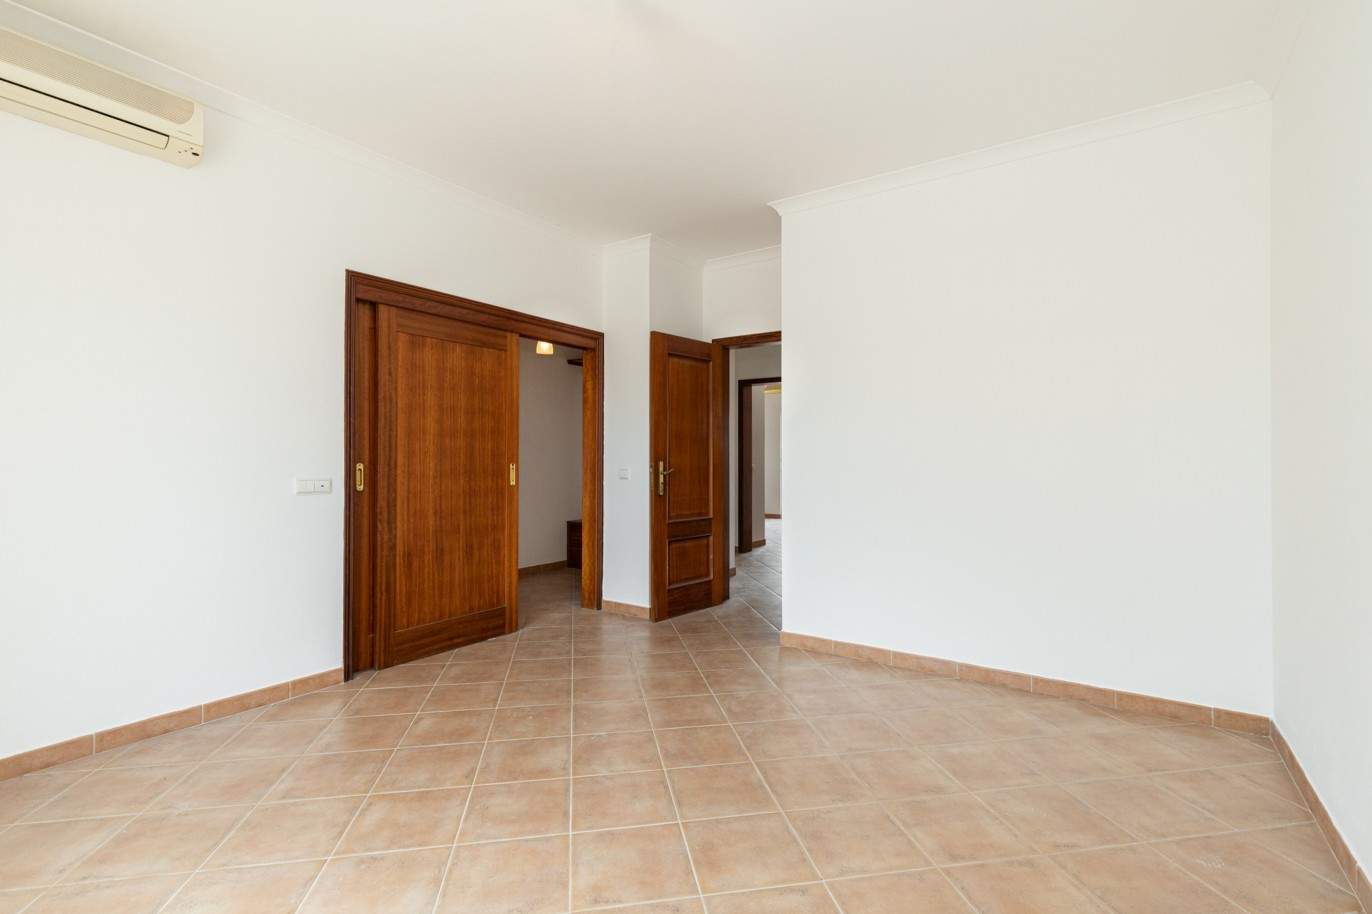 Villa de 3 dormitorios en venta en Porto de Mós, Lagos, Algarve_201773